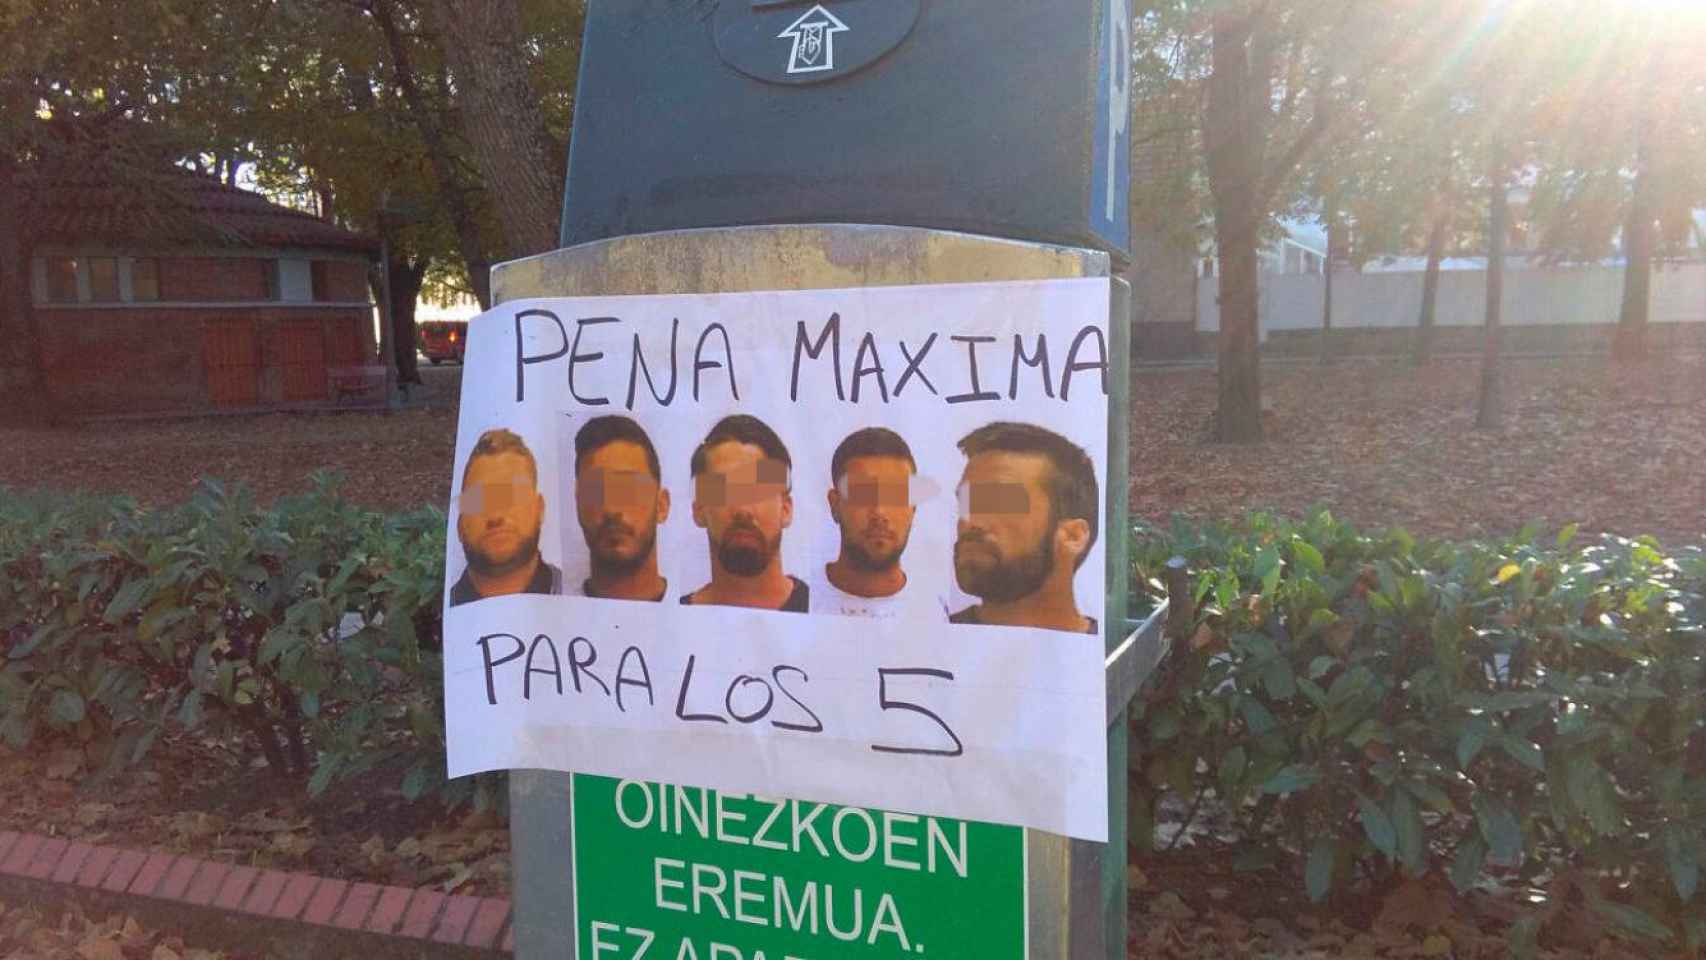 Un cartel por las calles de Pamplona pidiendo la condena máxima para los miembros de 'la Manada'.